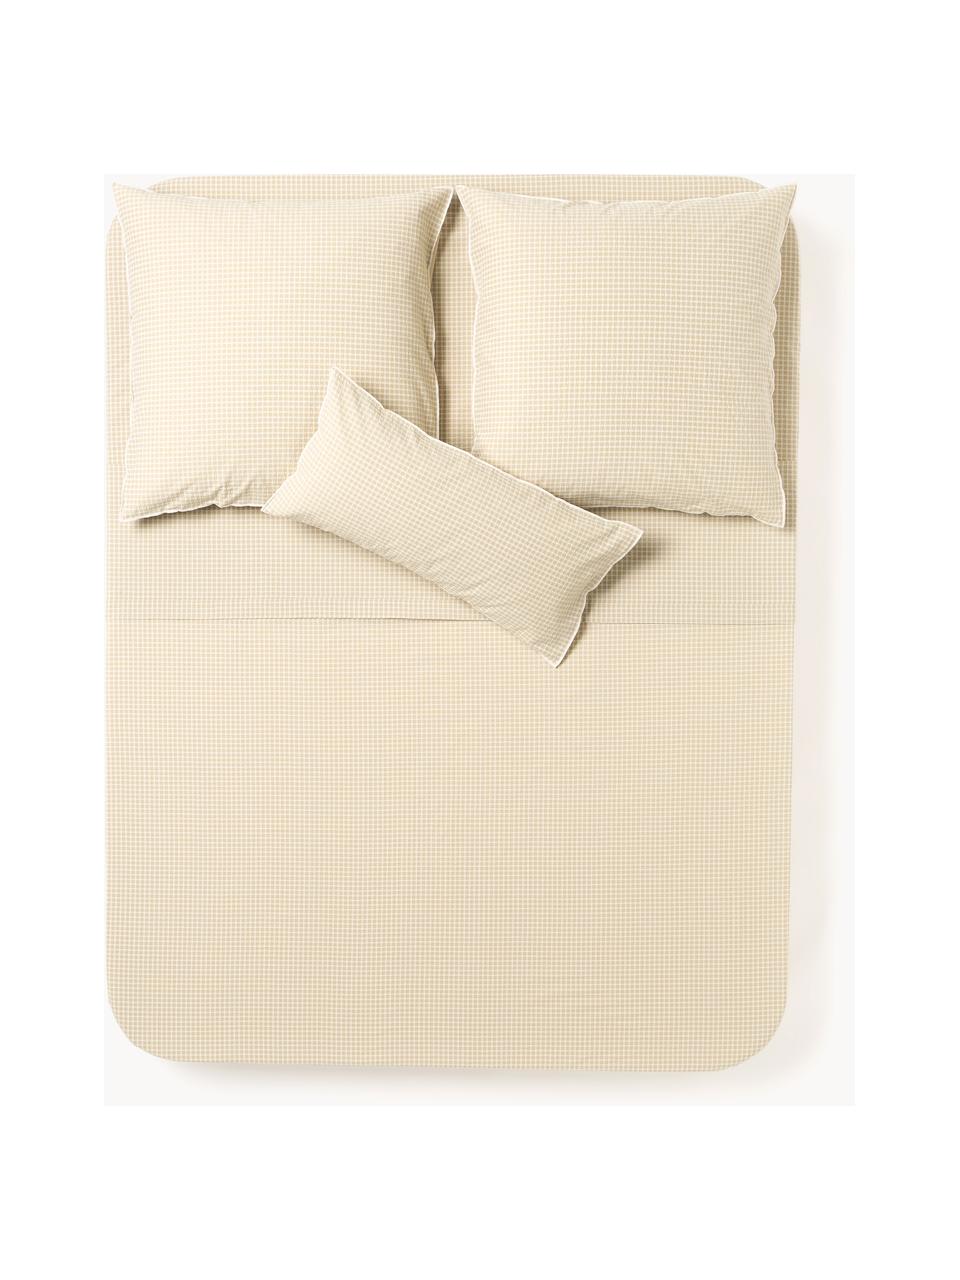 Drap plat en coton seersucker à carreaux Davey, Beige, blanc, larg. 240 x long. 280 cm